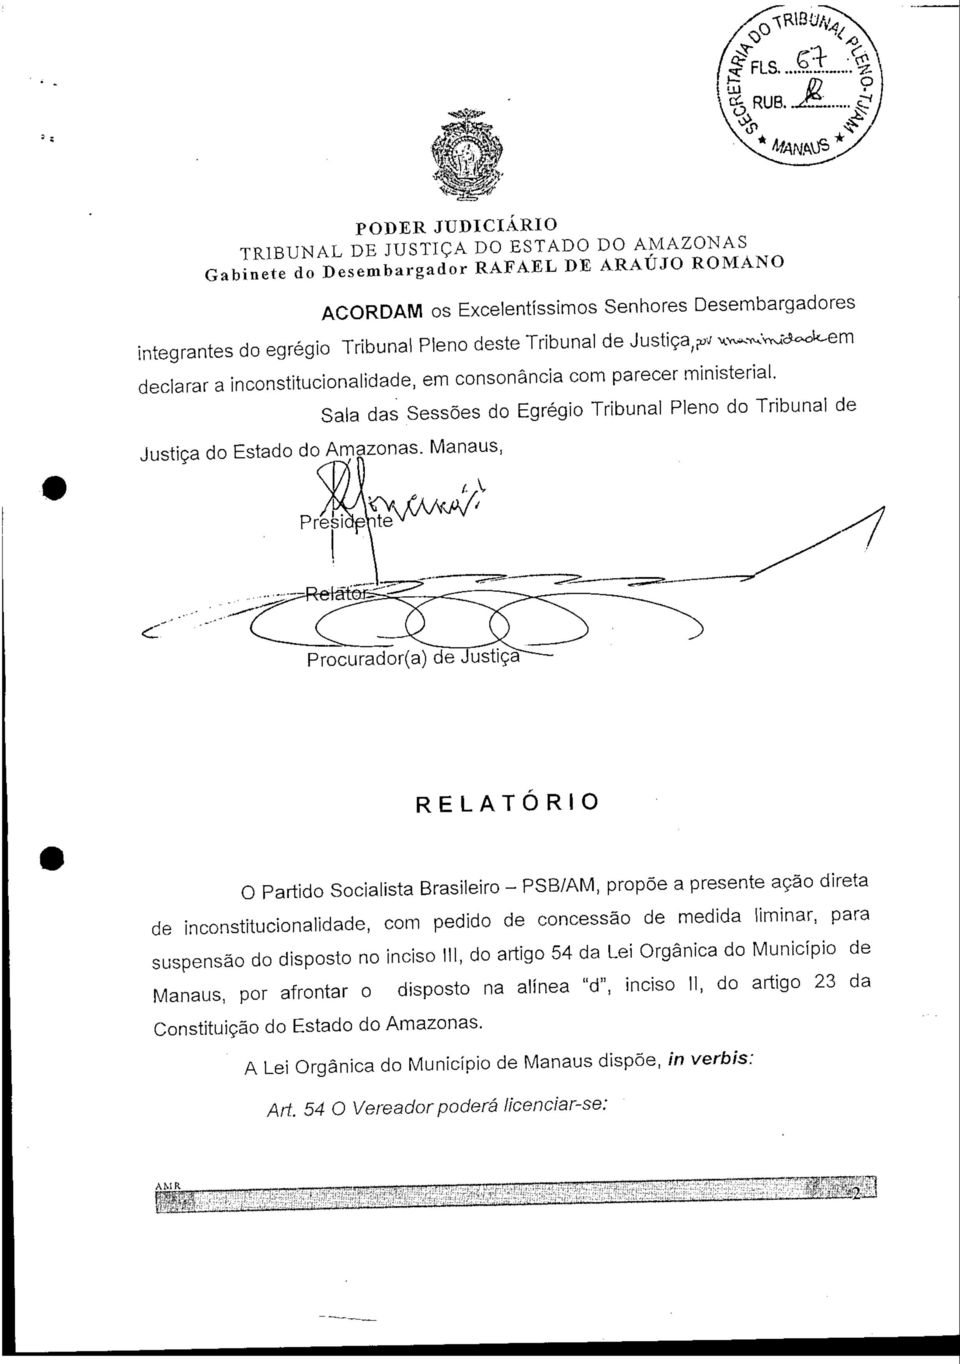 ,V Procurador(a) de Justiça RELATÓRIO O Partido Socialista Brasileiro - PSB/AM, propõe a presente ação direta de inconstitucionalidade, com pedido de concessão de medida liminar, para suspensão do